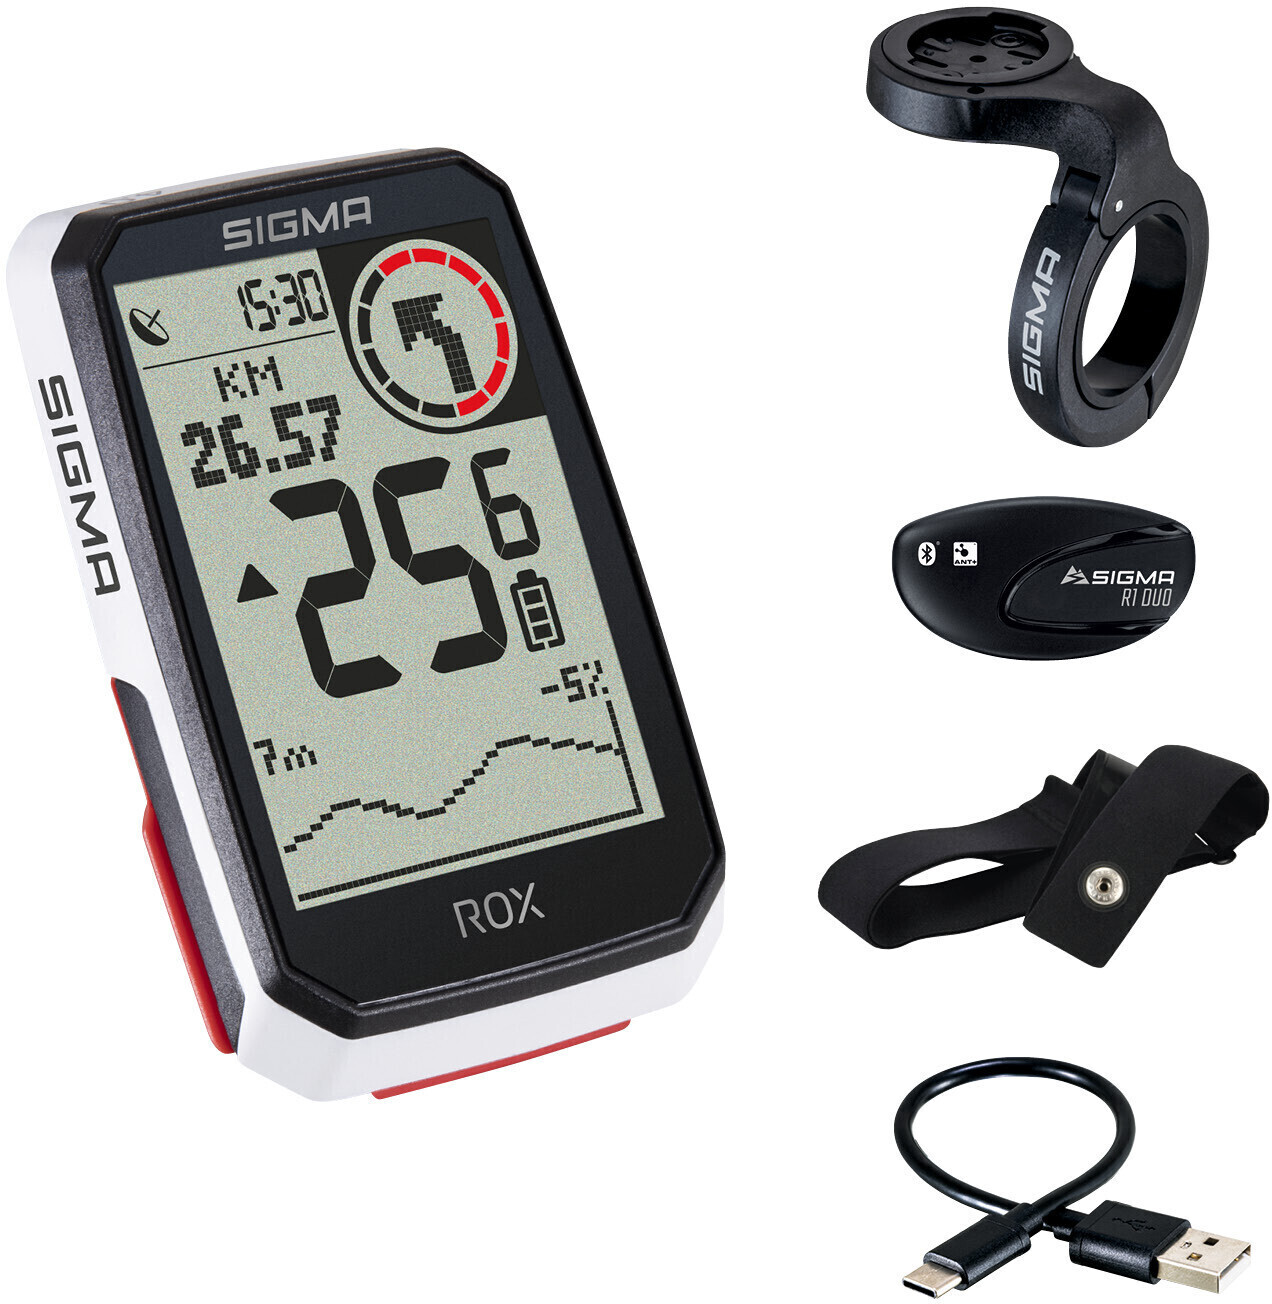 Compteur Vélo sans Fil/GPS Sigma ROX 4.0 30 Fonctions Blanc + Cardio